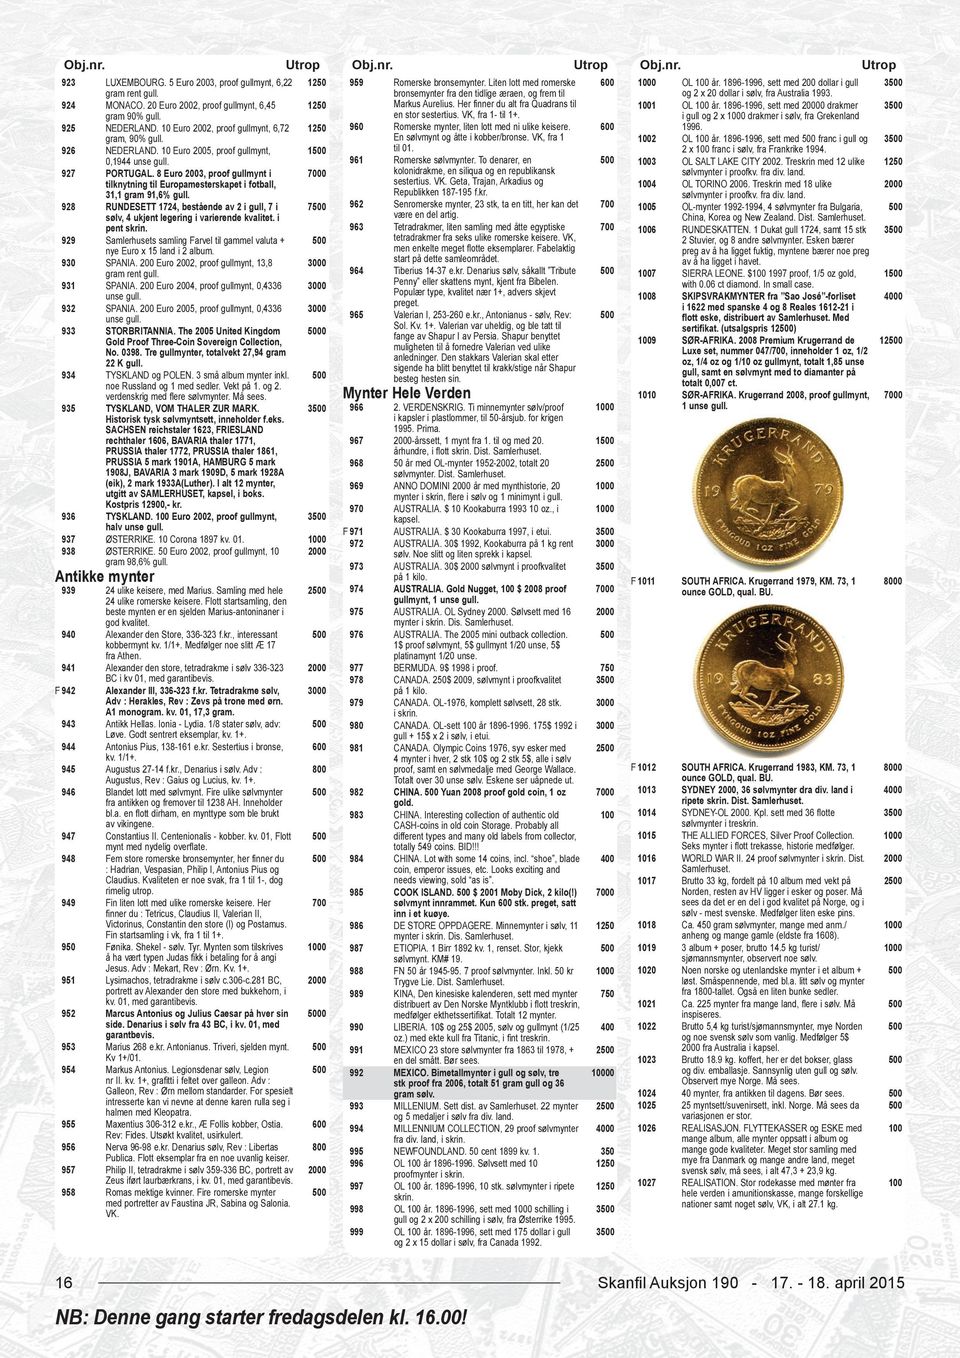 1896-1996, sett med 0 drakmer 3 gram 90% gull. en stor sestertius. VK, fra 1- til 1+. i gull og 2 x drakmer i sølv, fra Grekenland 925 NEDERLAND.